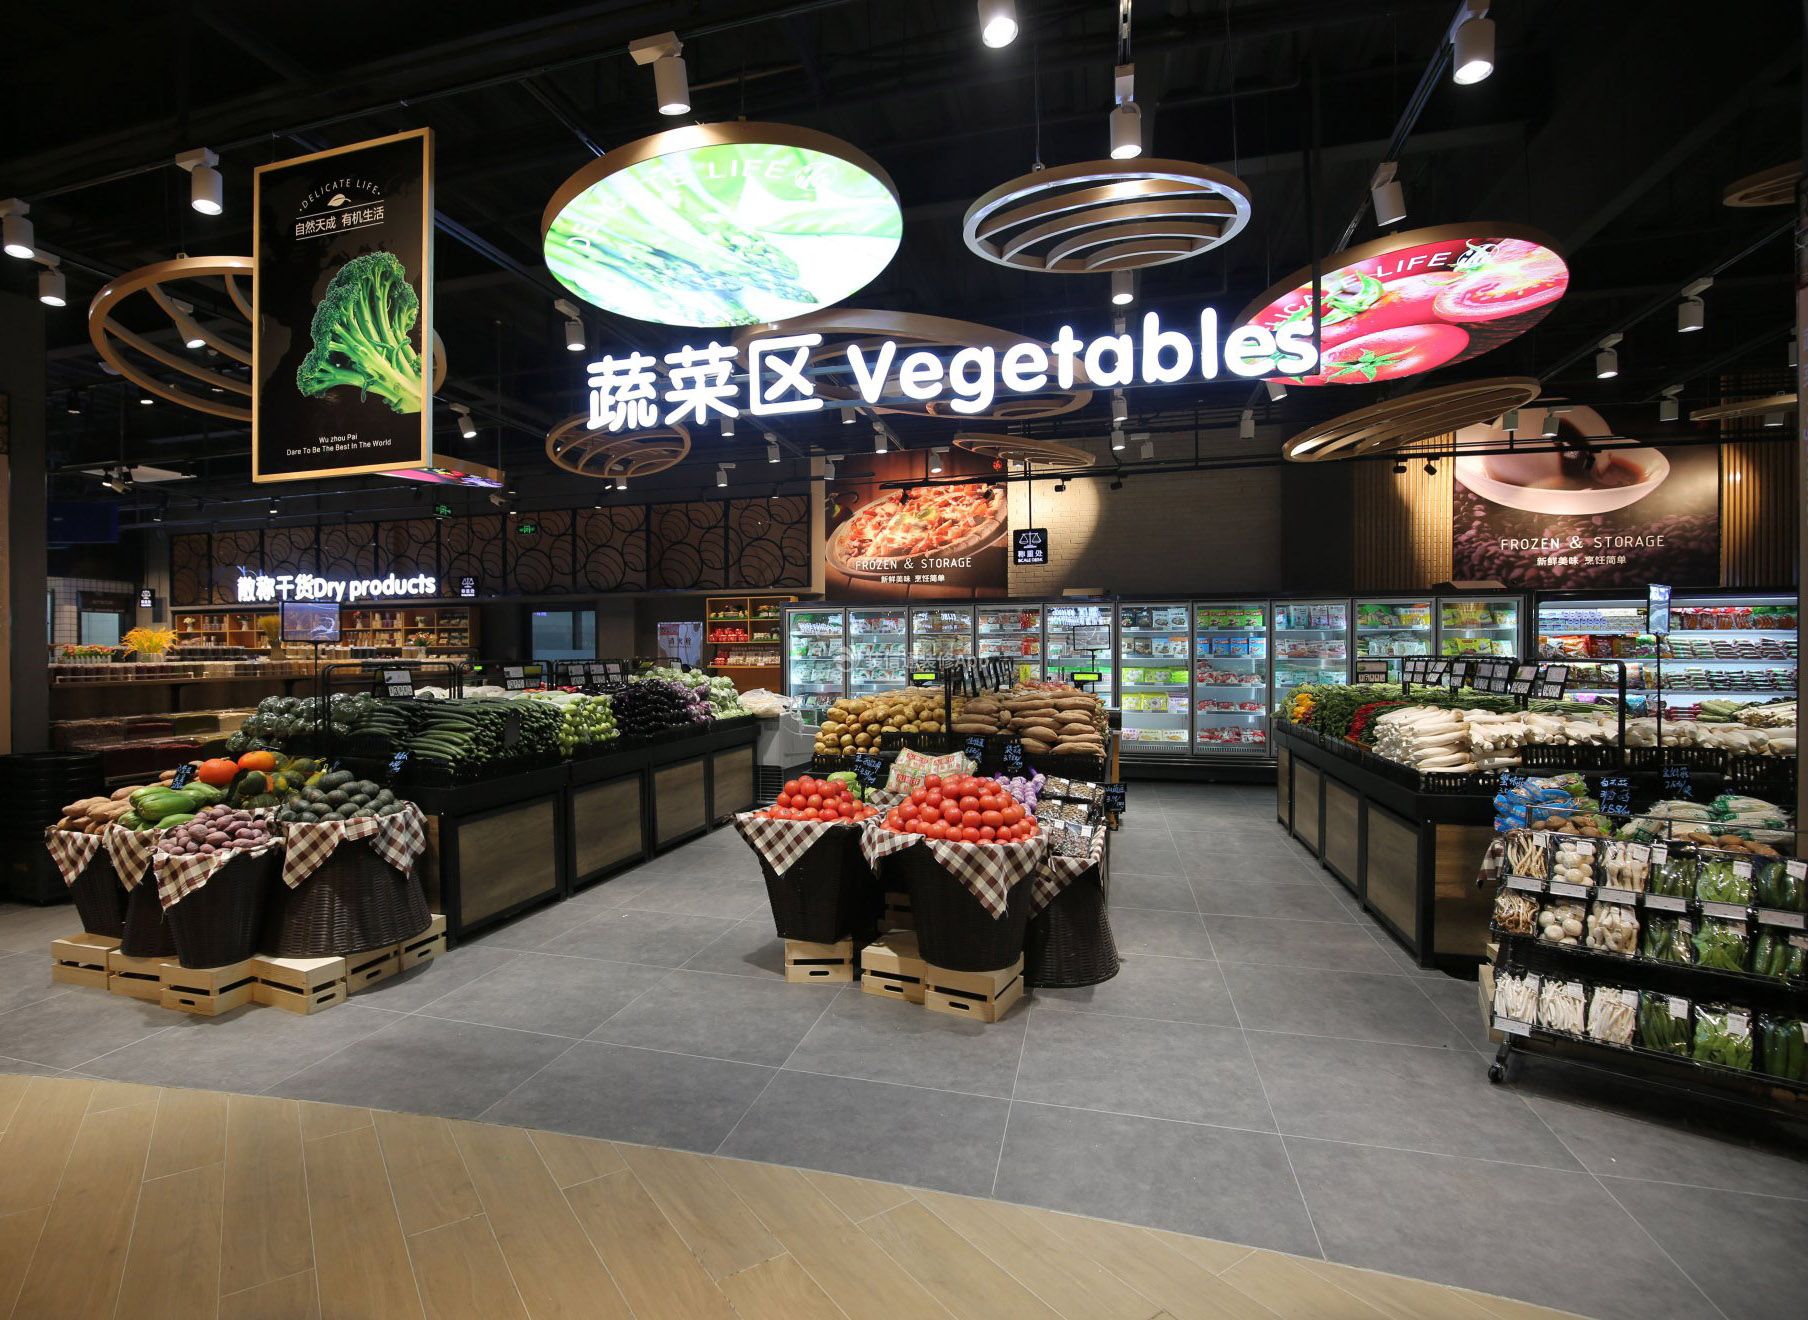 上海超市蔬菜区装潢装修效果图